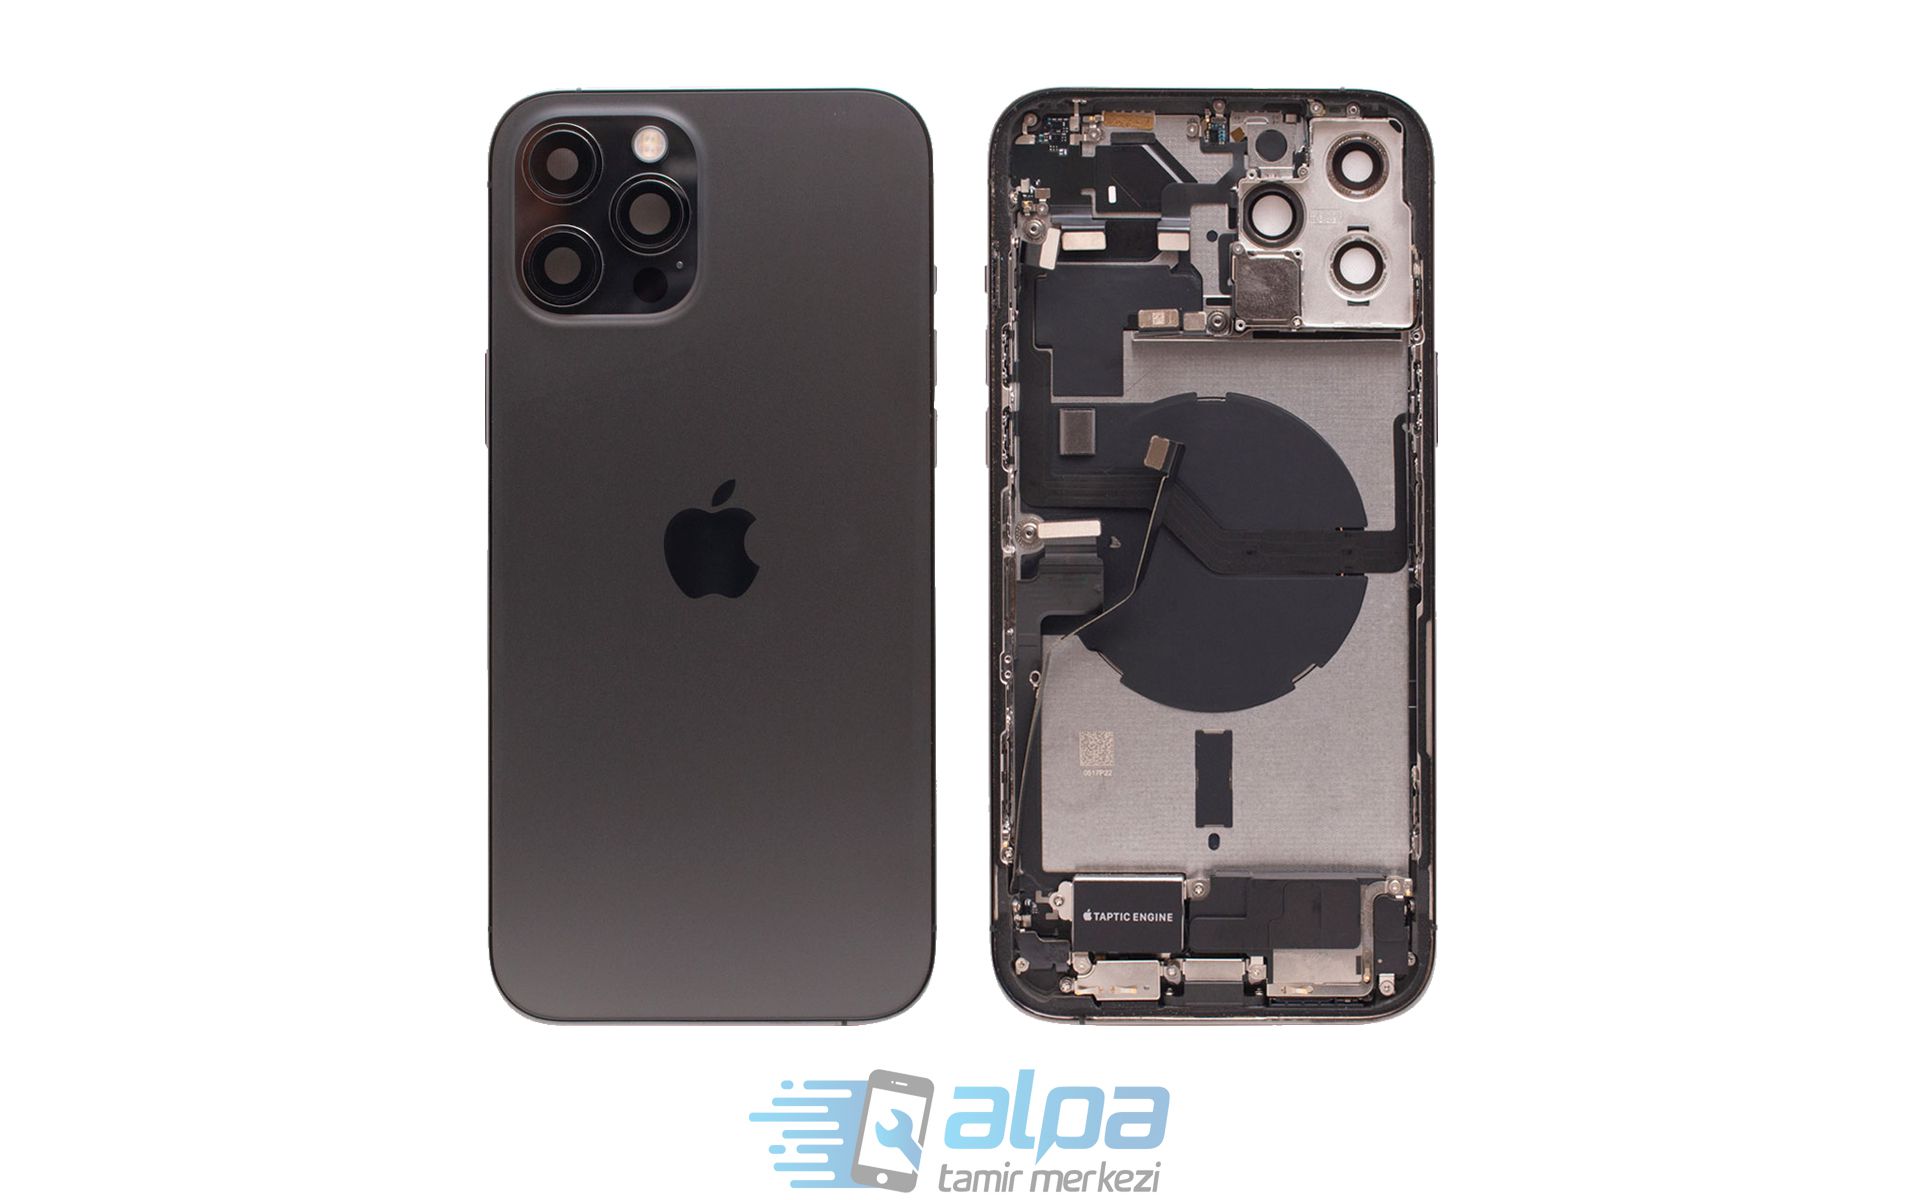 iPhone 12 Pro Max Kasa Değişimi Fiyatı 3299 TL